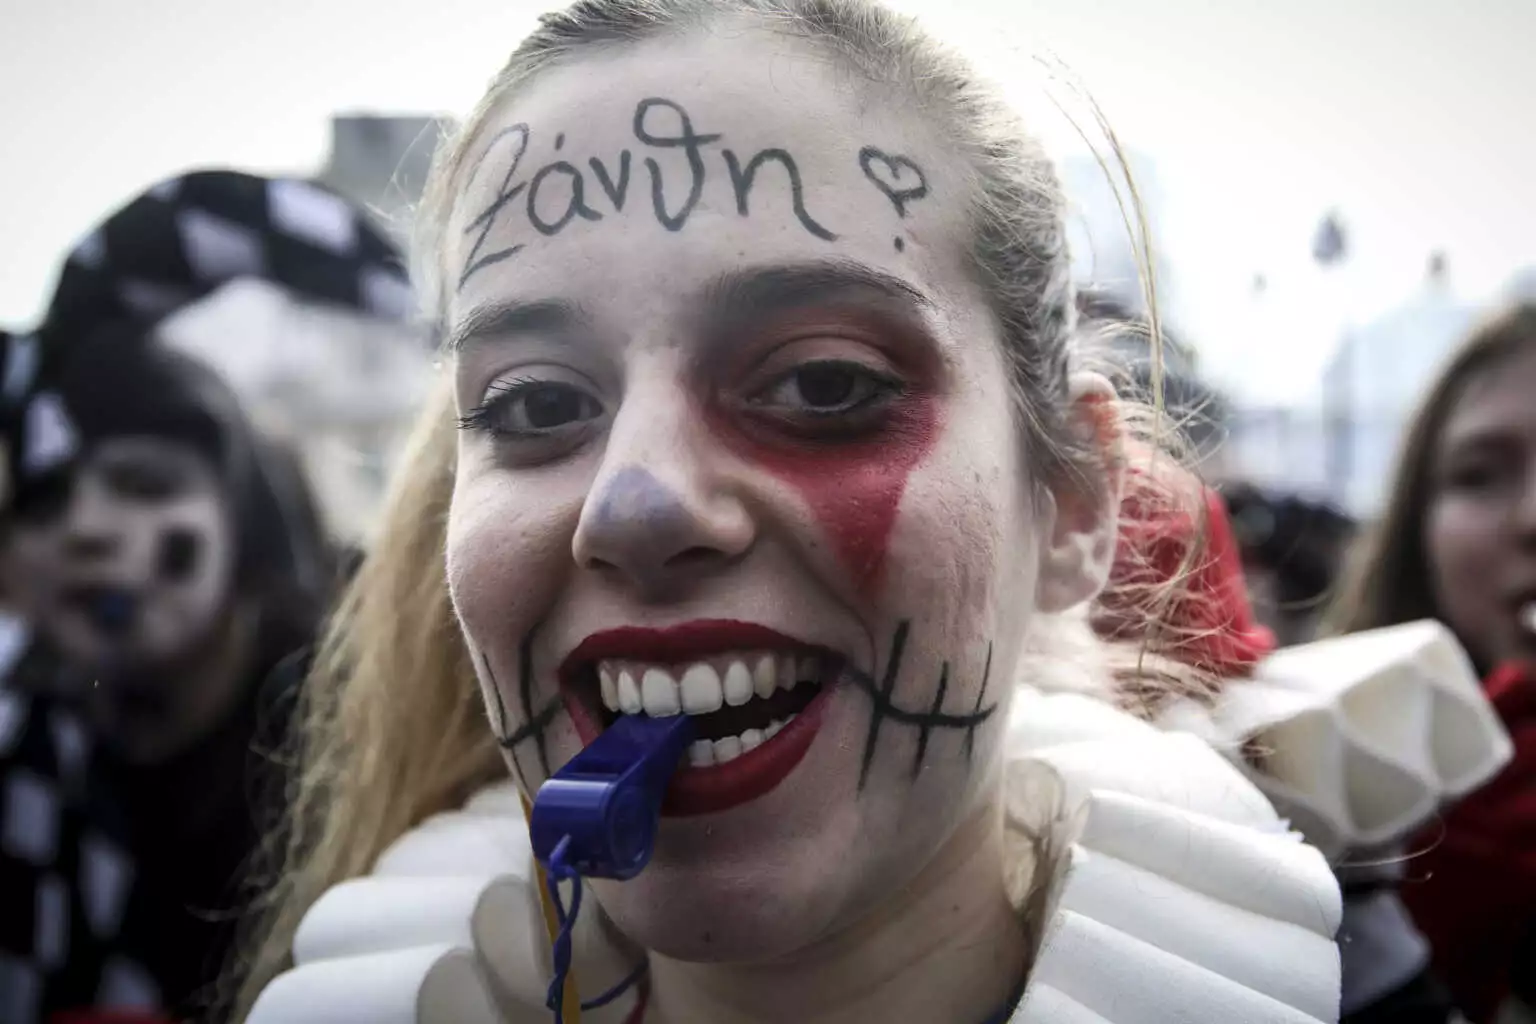  Ξάνθη: Καρναβάλι με παρέλαση 8.000 ατόμων που έδειχναν να απολαμβάνουν την κάθε στιγμή